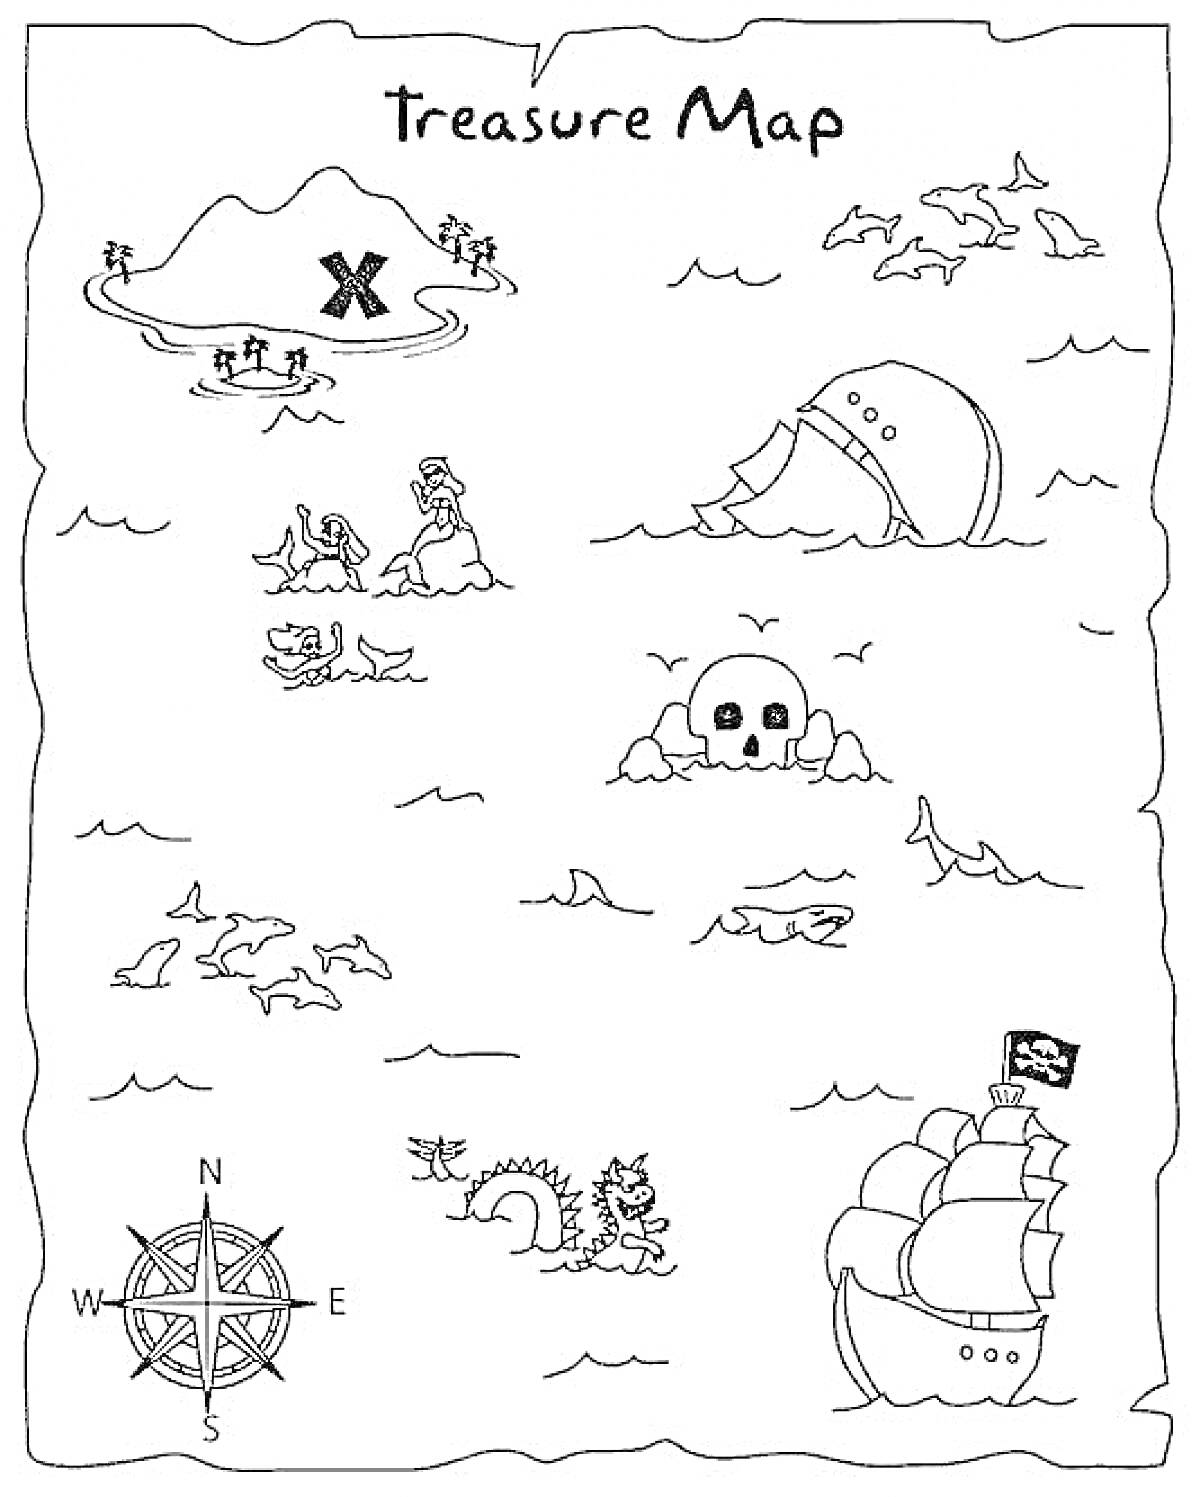 Treasure Map с пиратским кораблем, островом с отметкой X, черепом, затонувшим кораблем, русалкой, морским змеем, компасом и чайками